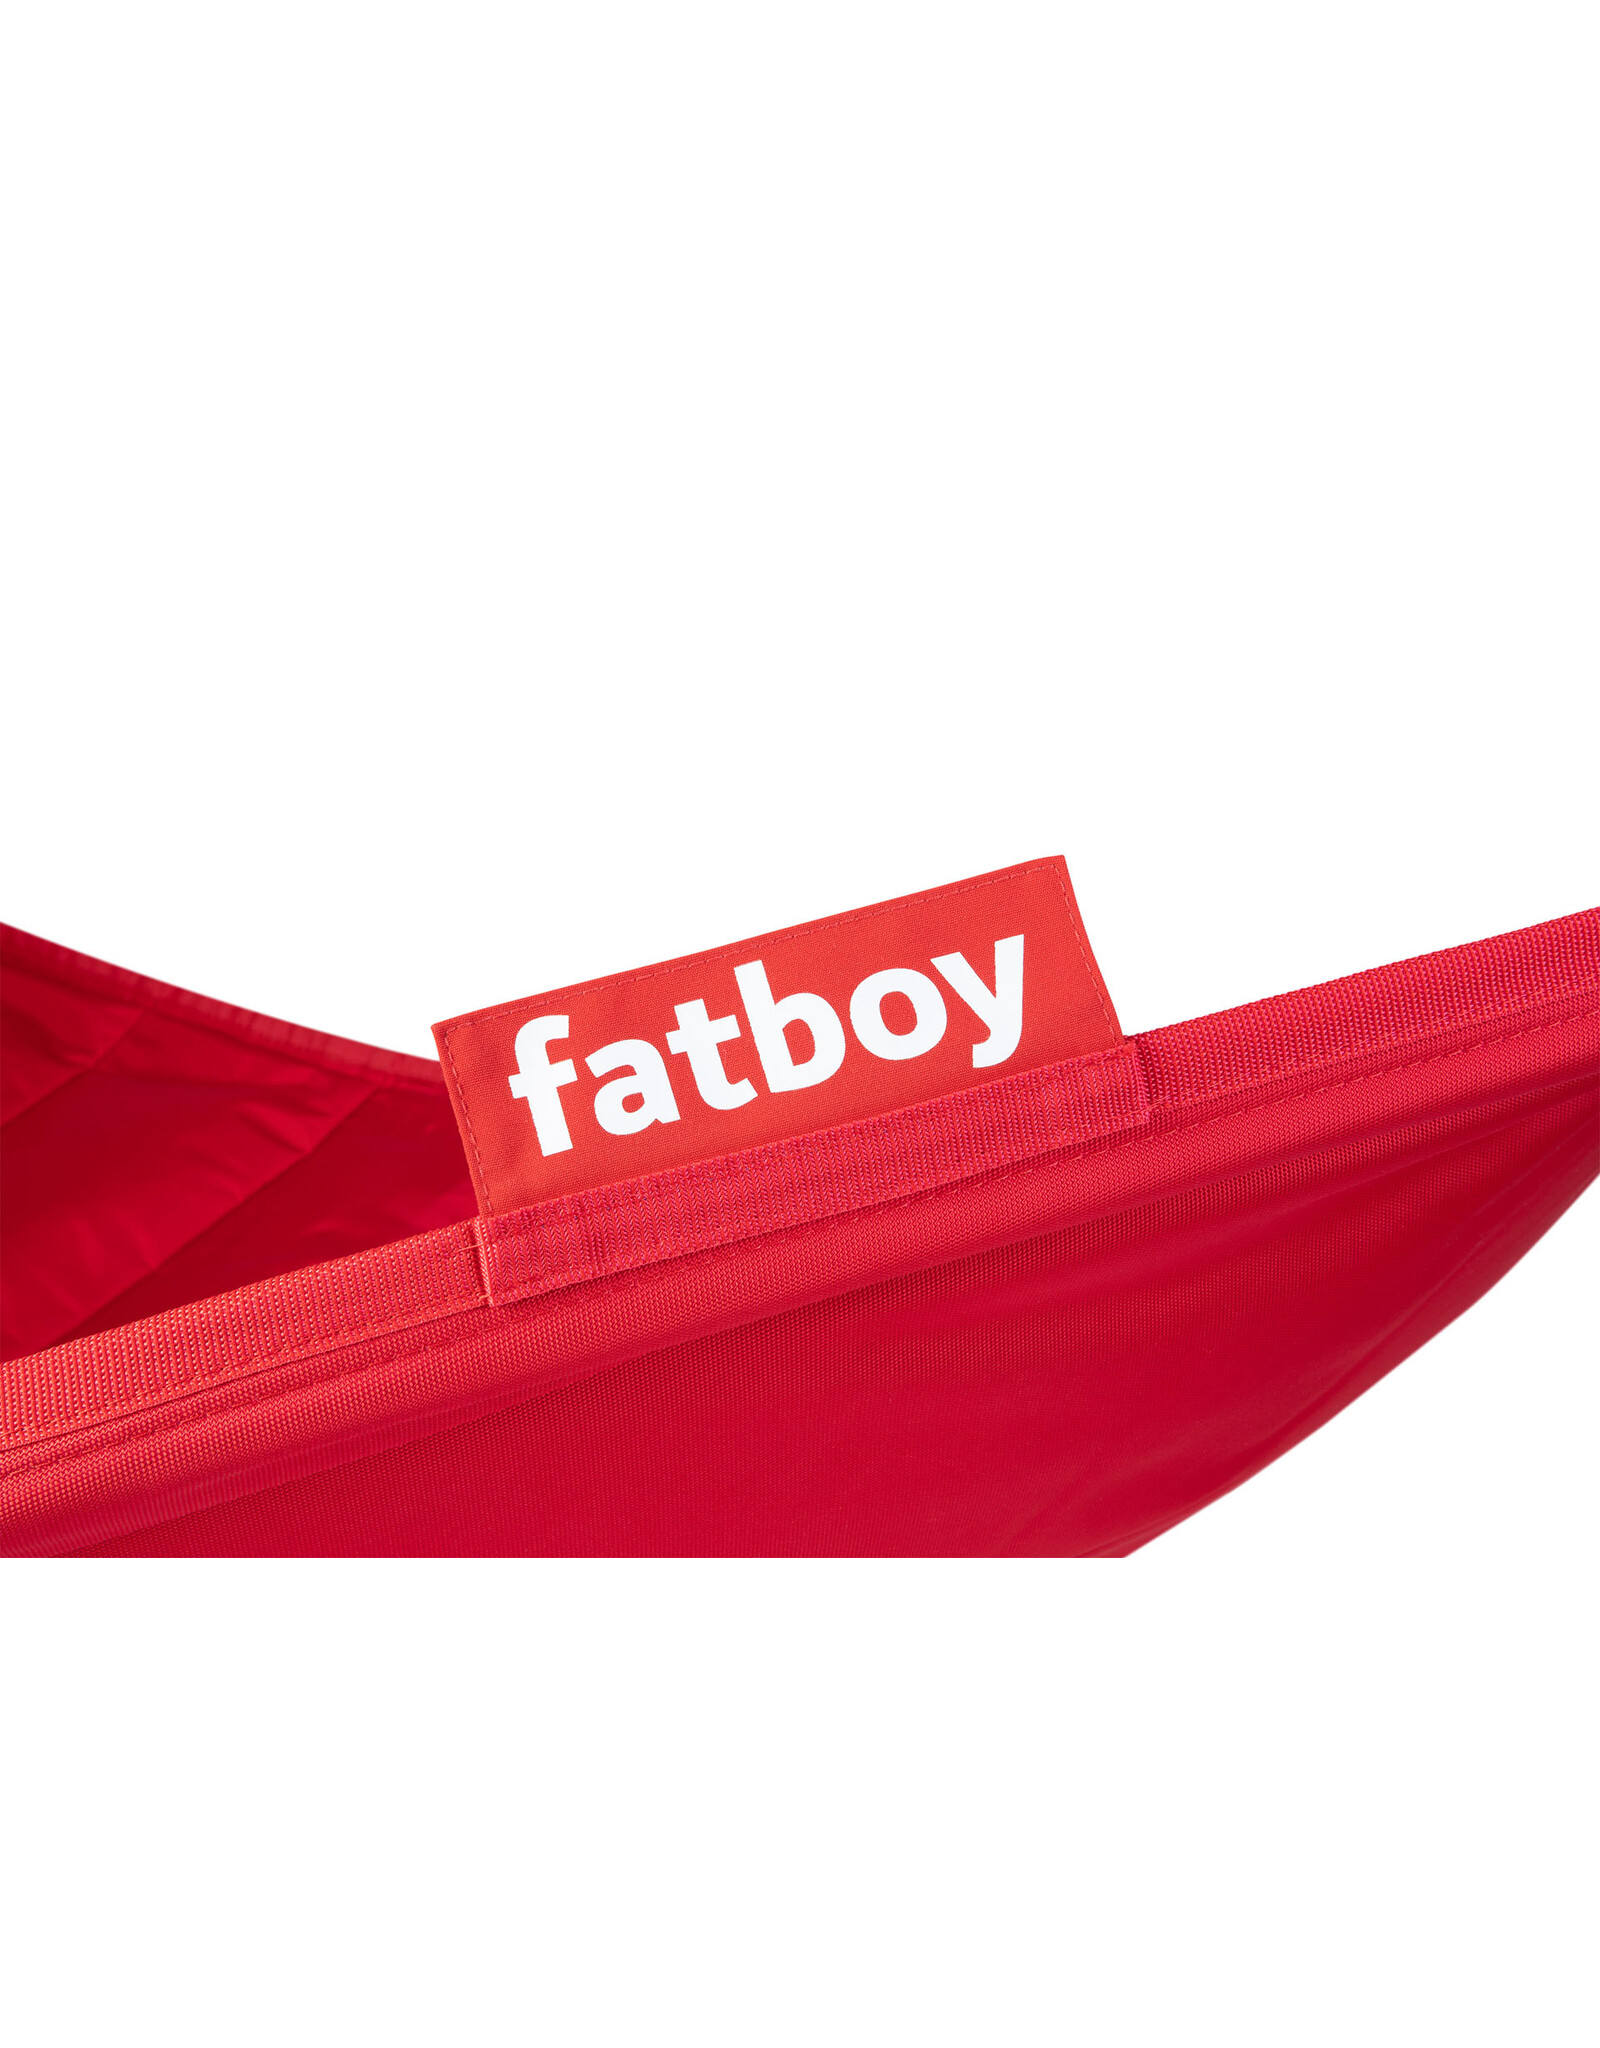 Fatboy® Fatboy® Headdemock Red incl. Rack Black